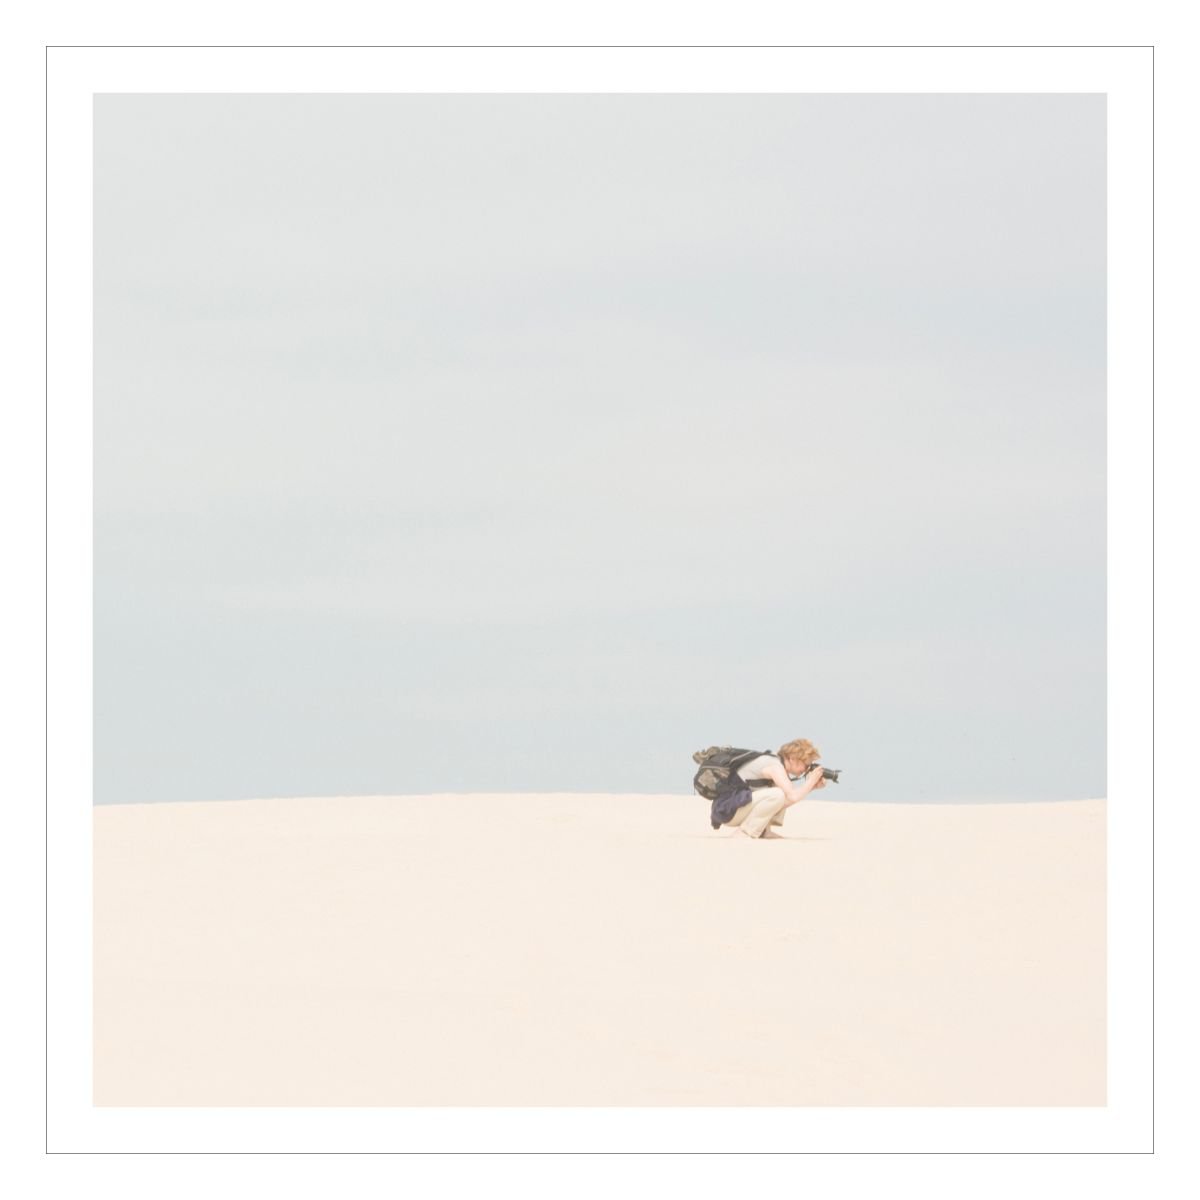 Dune 6 by Beata Podwysocka